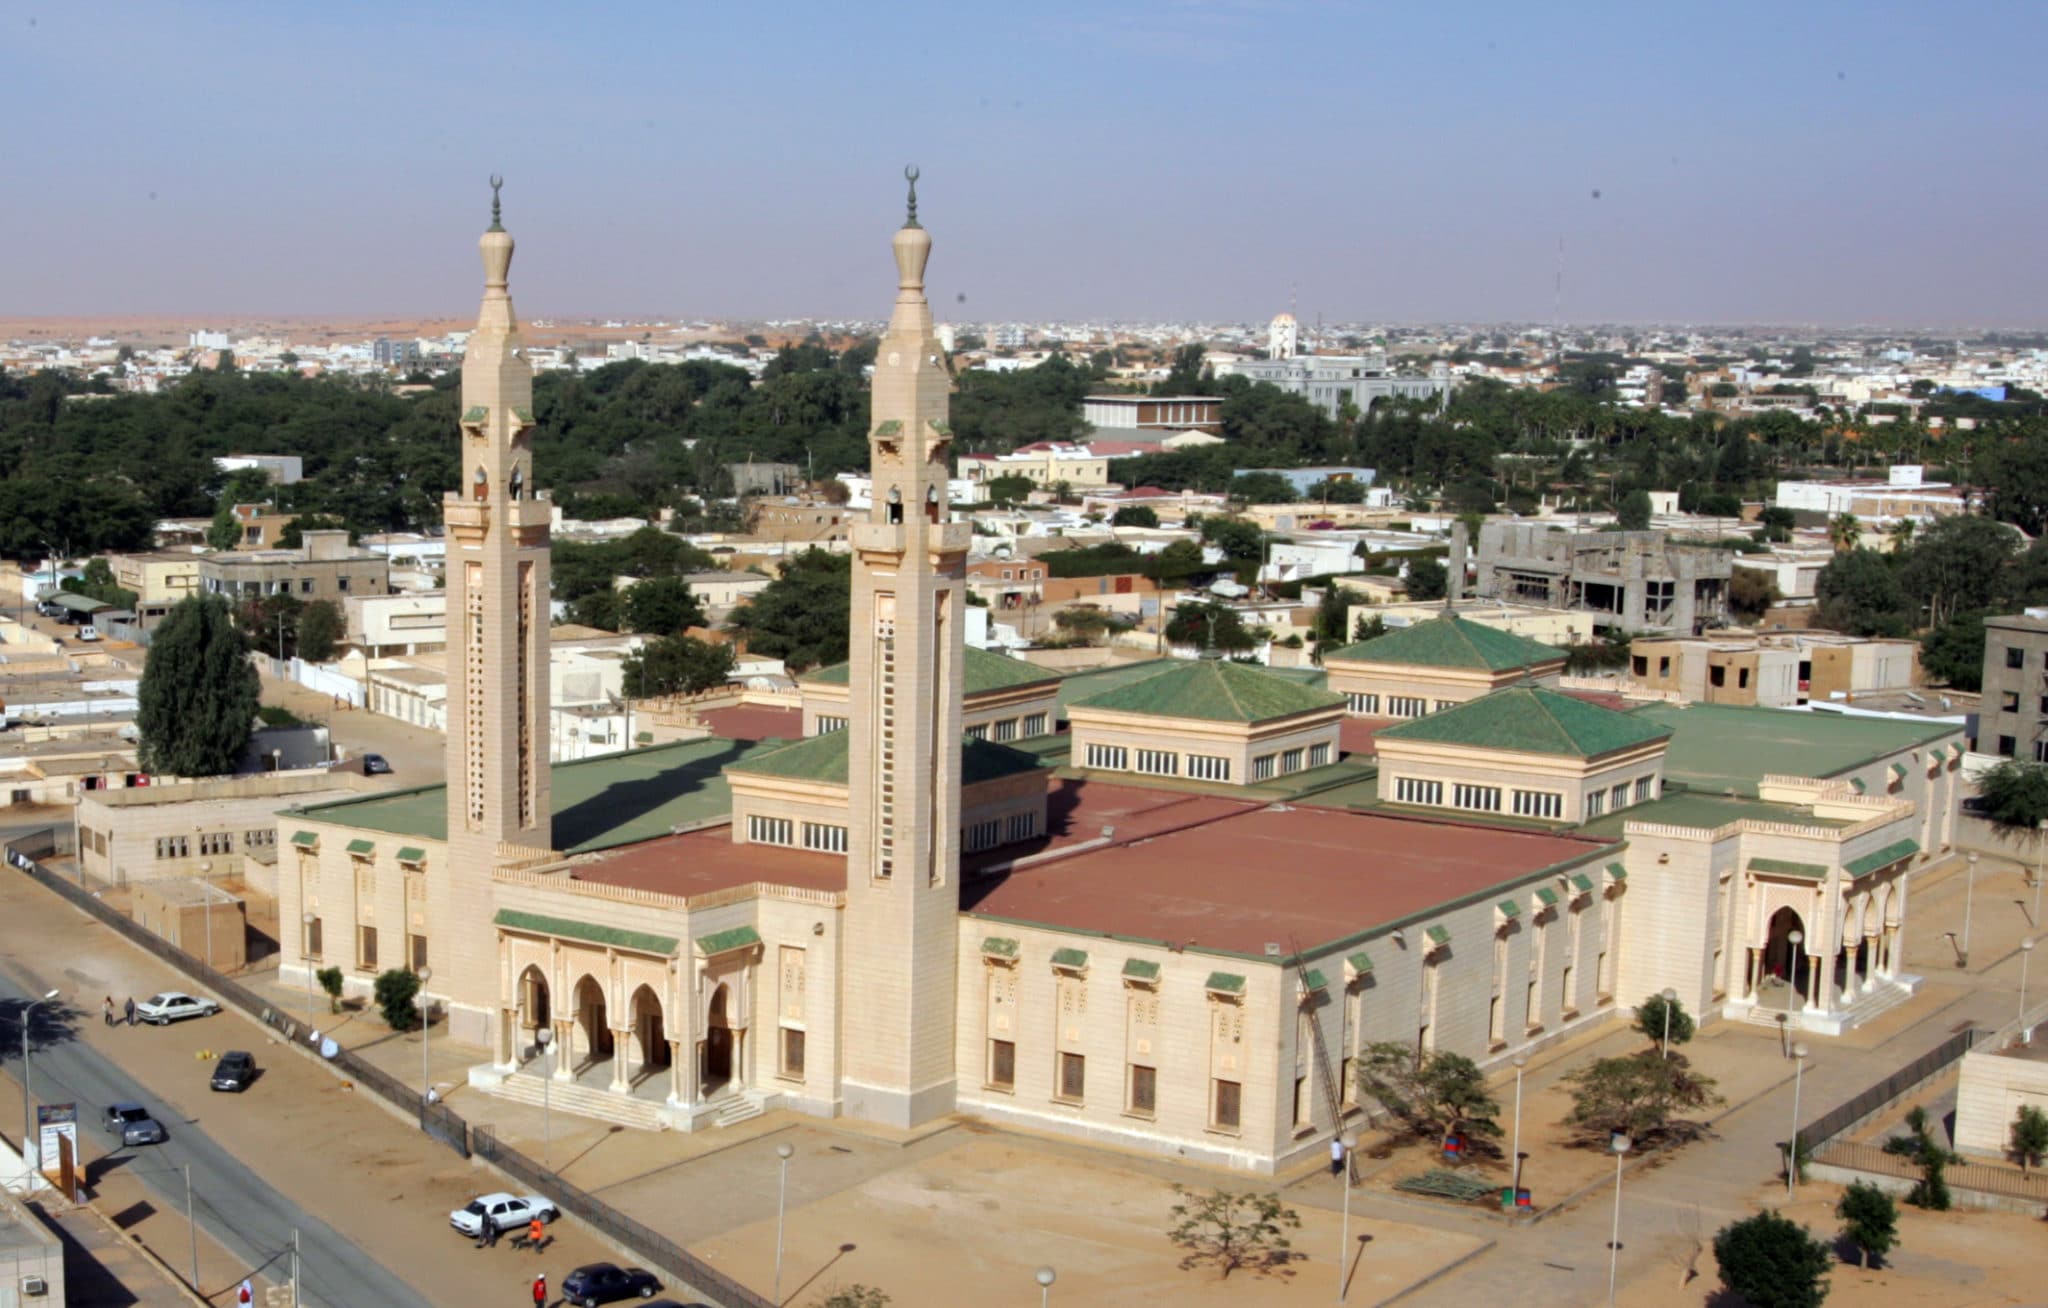 COVID-19 : l'Association des Ulémas mauritaniens recommande d'effectuer les prières à domicile